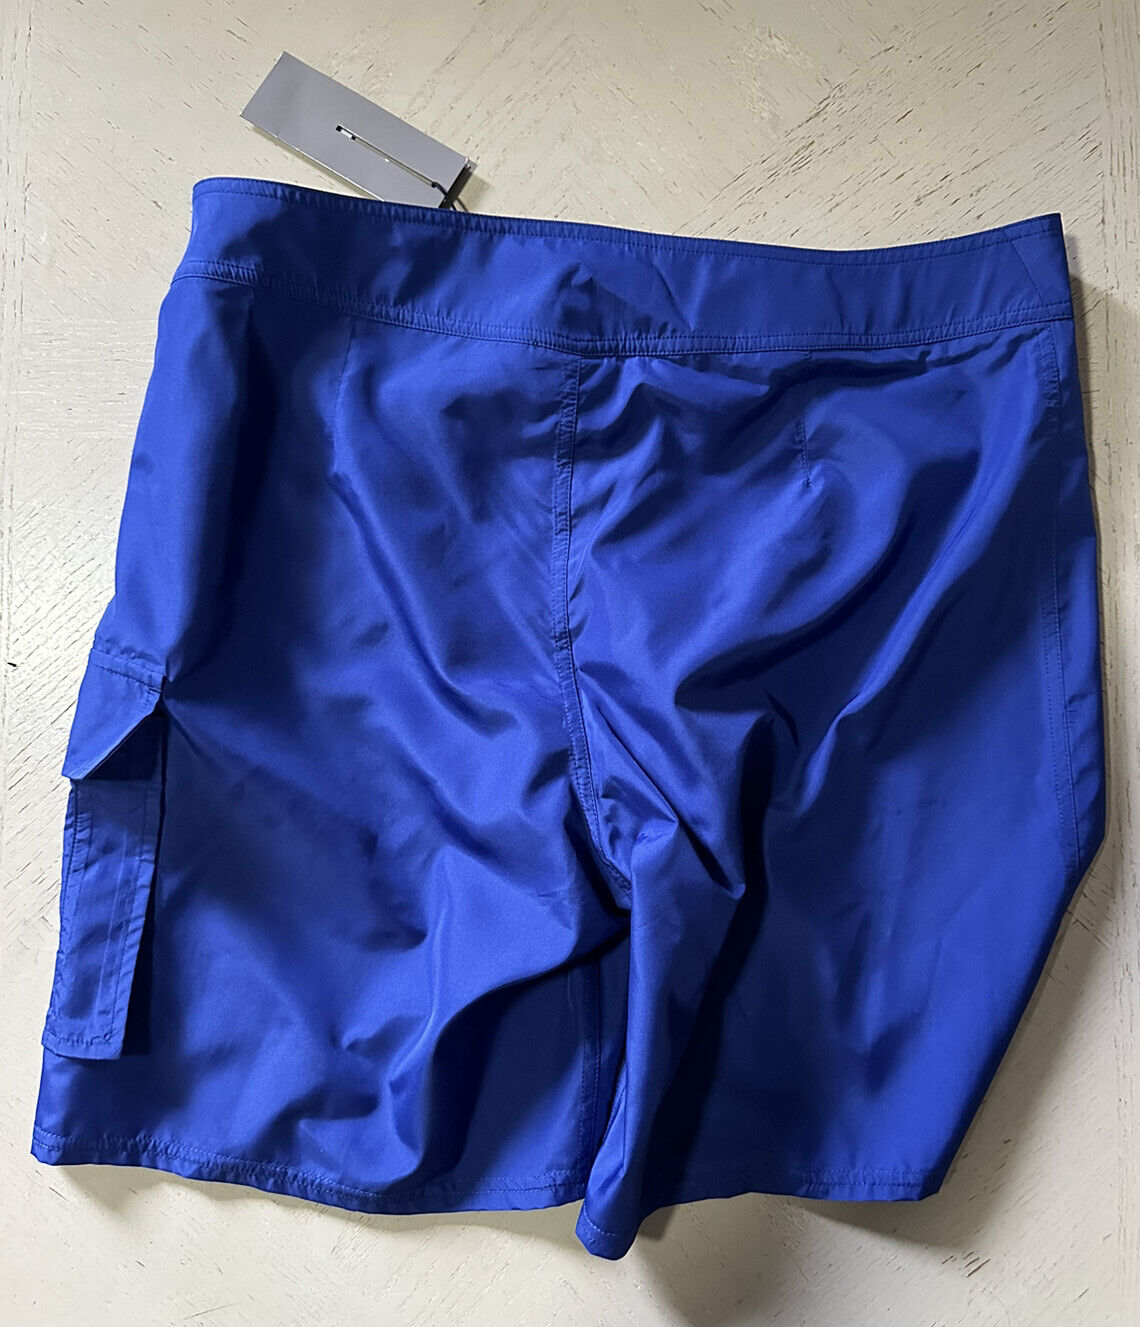 NWT $790 DIOR Drawstring Board Shorts Swim Short Blue size L